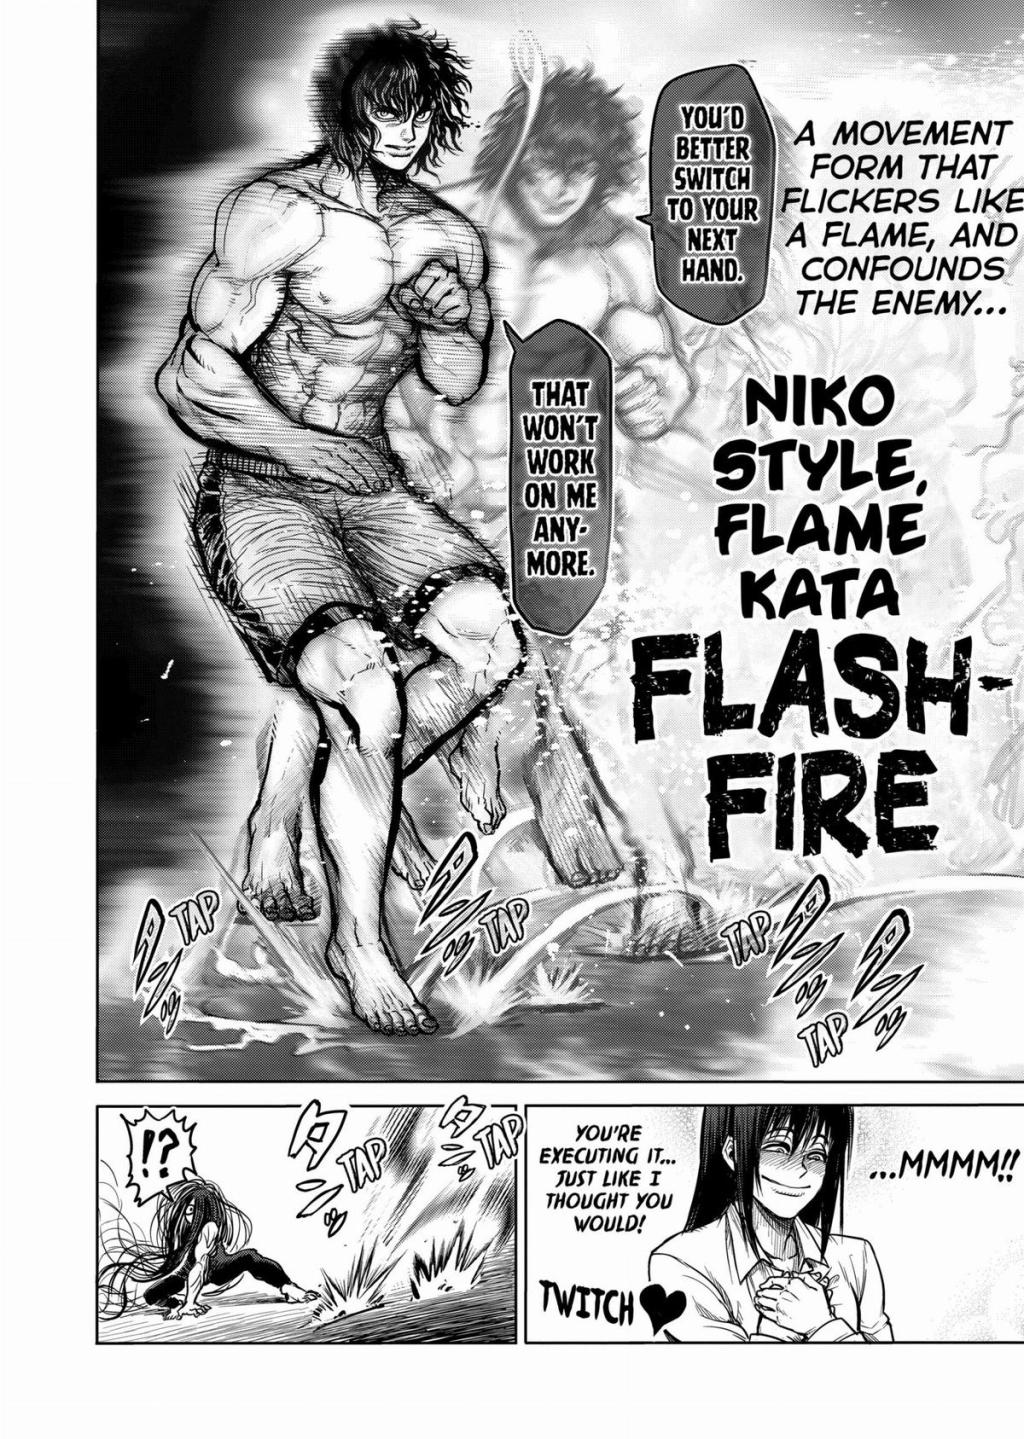 niko style flame kata flash fire